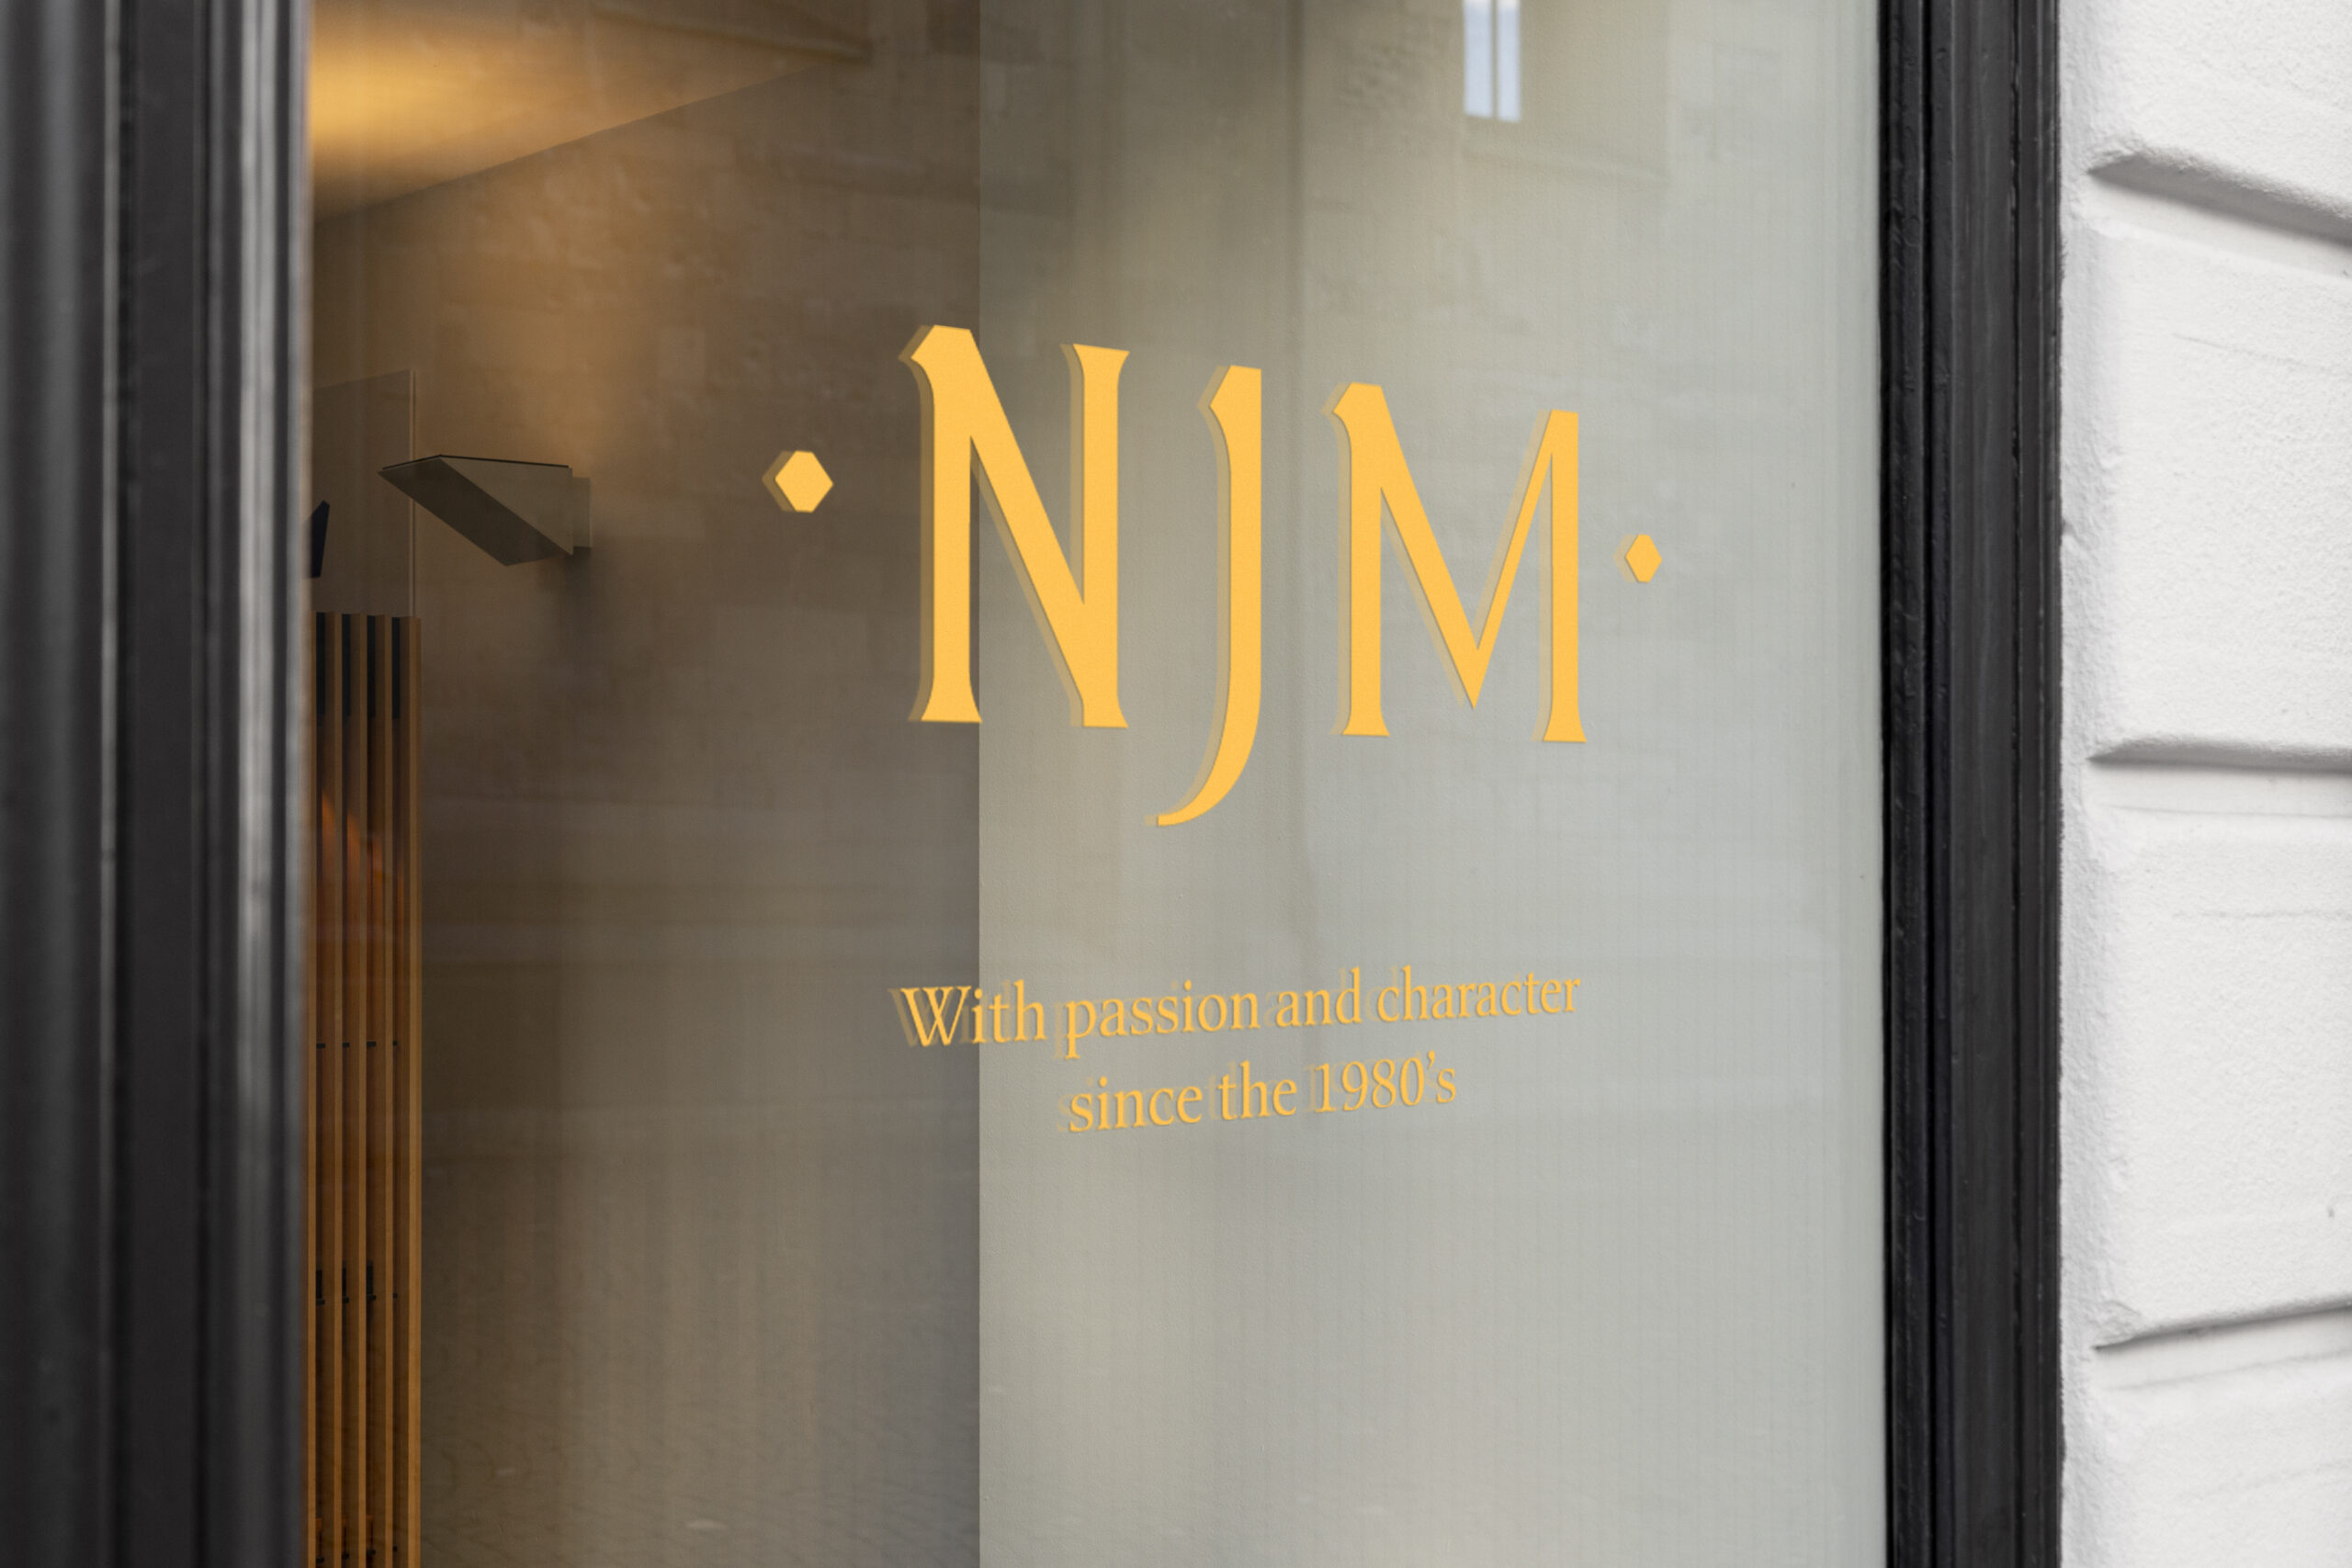 NJM Window signage (logo on glass)